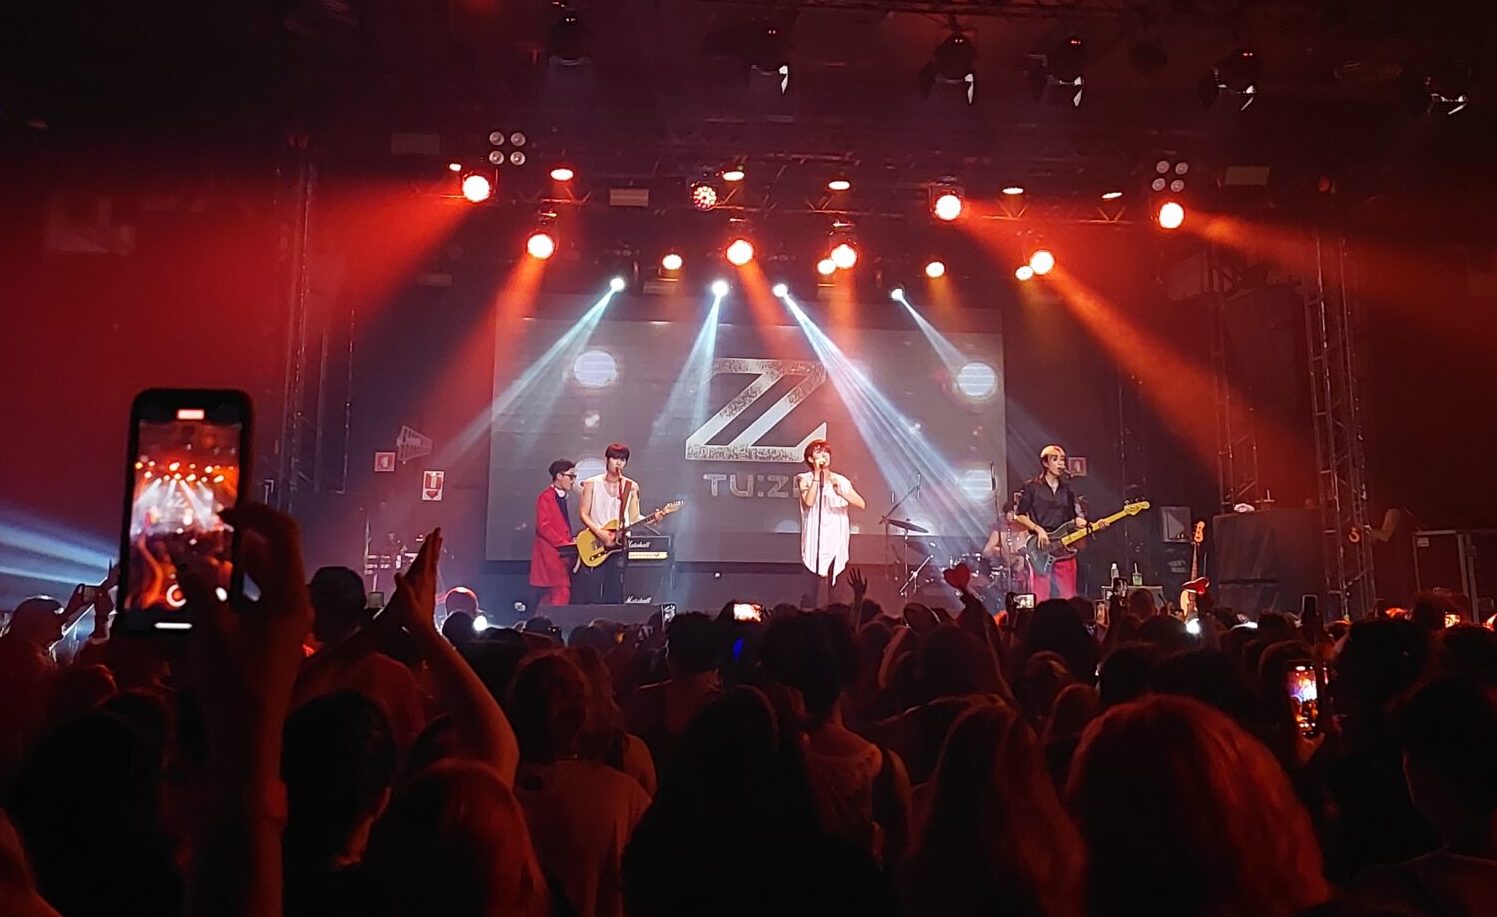 Em nova tour pelo Brasil, a banda sul-coreana 2Z agita São Paulo com muito synth pop e rock e se emociona com carinho dos fãs.